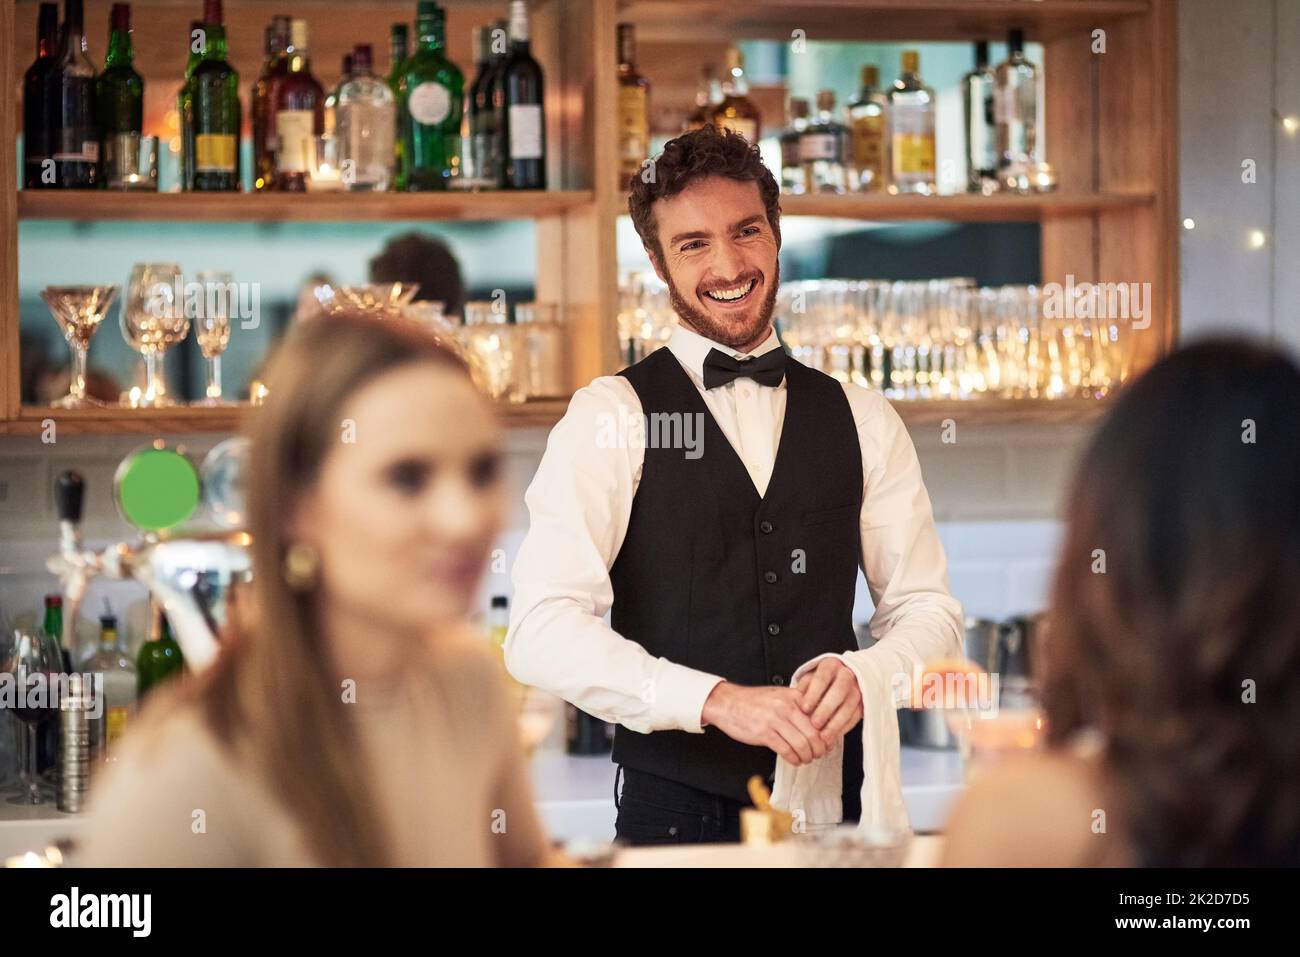 Er liebt seinen Job einfach. Eine kleine Aufnahme eines hübschen jungen Kellners, der lächelt, während er in einer Bar steht. Stockfoto